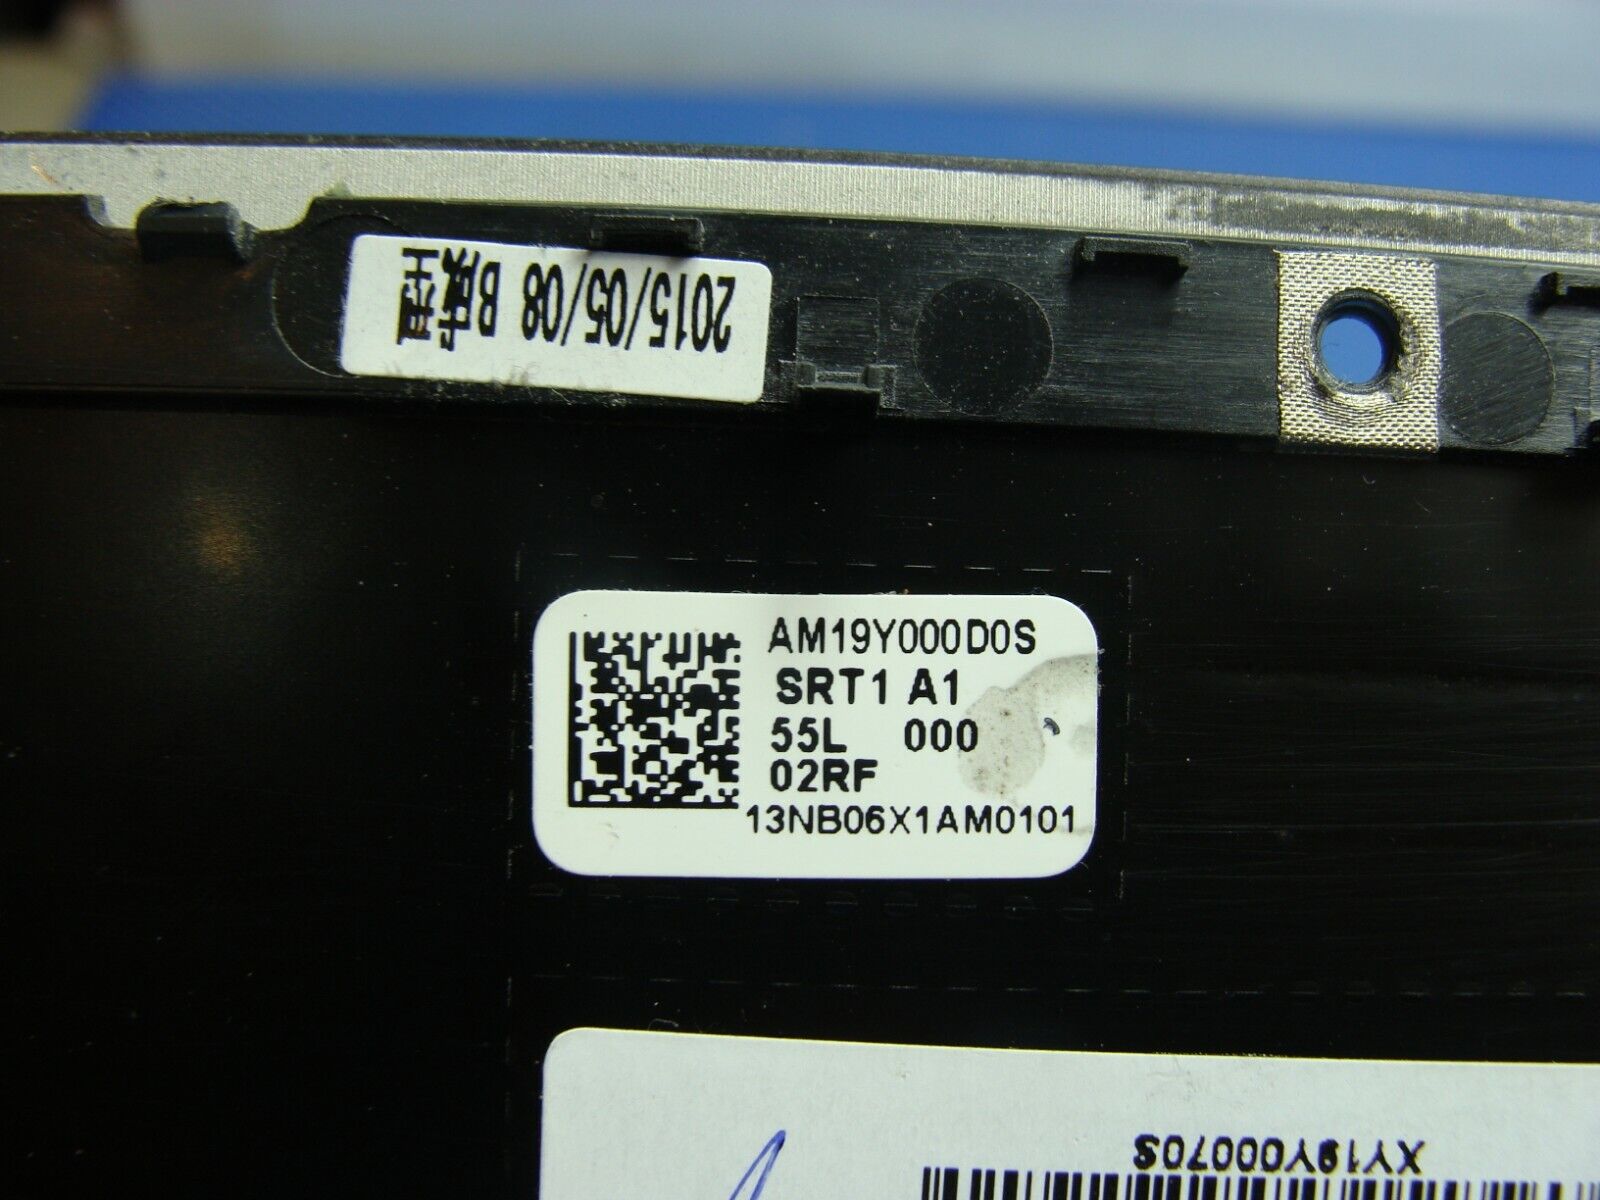 Asus UX305FA-ASM1 13.3